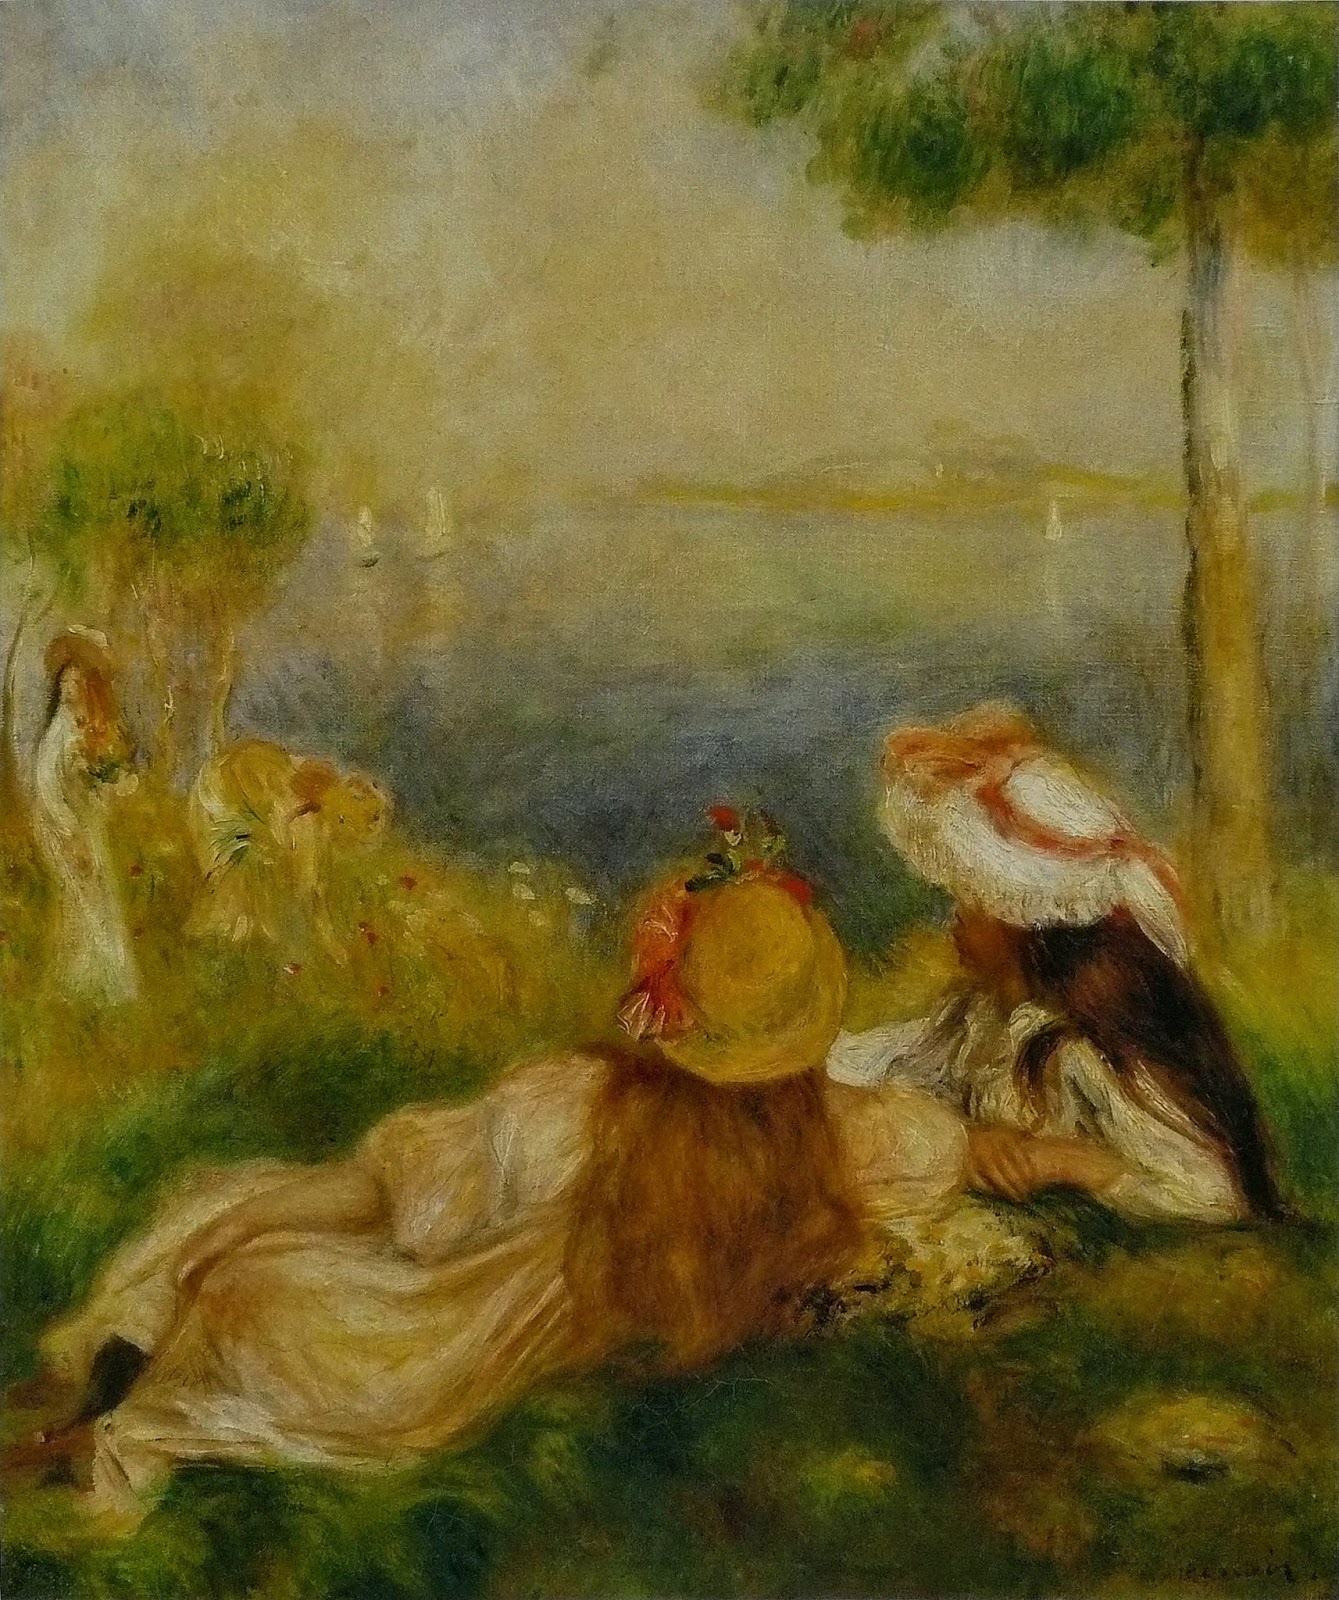 Pierre+Auguste+Renoir-1841-1-19 (513).jpg